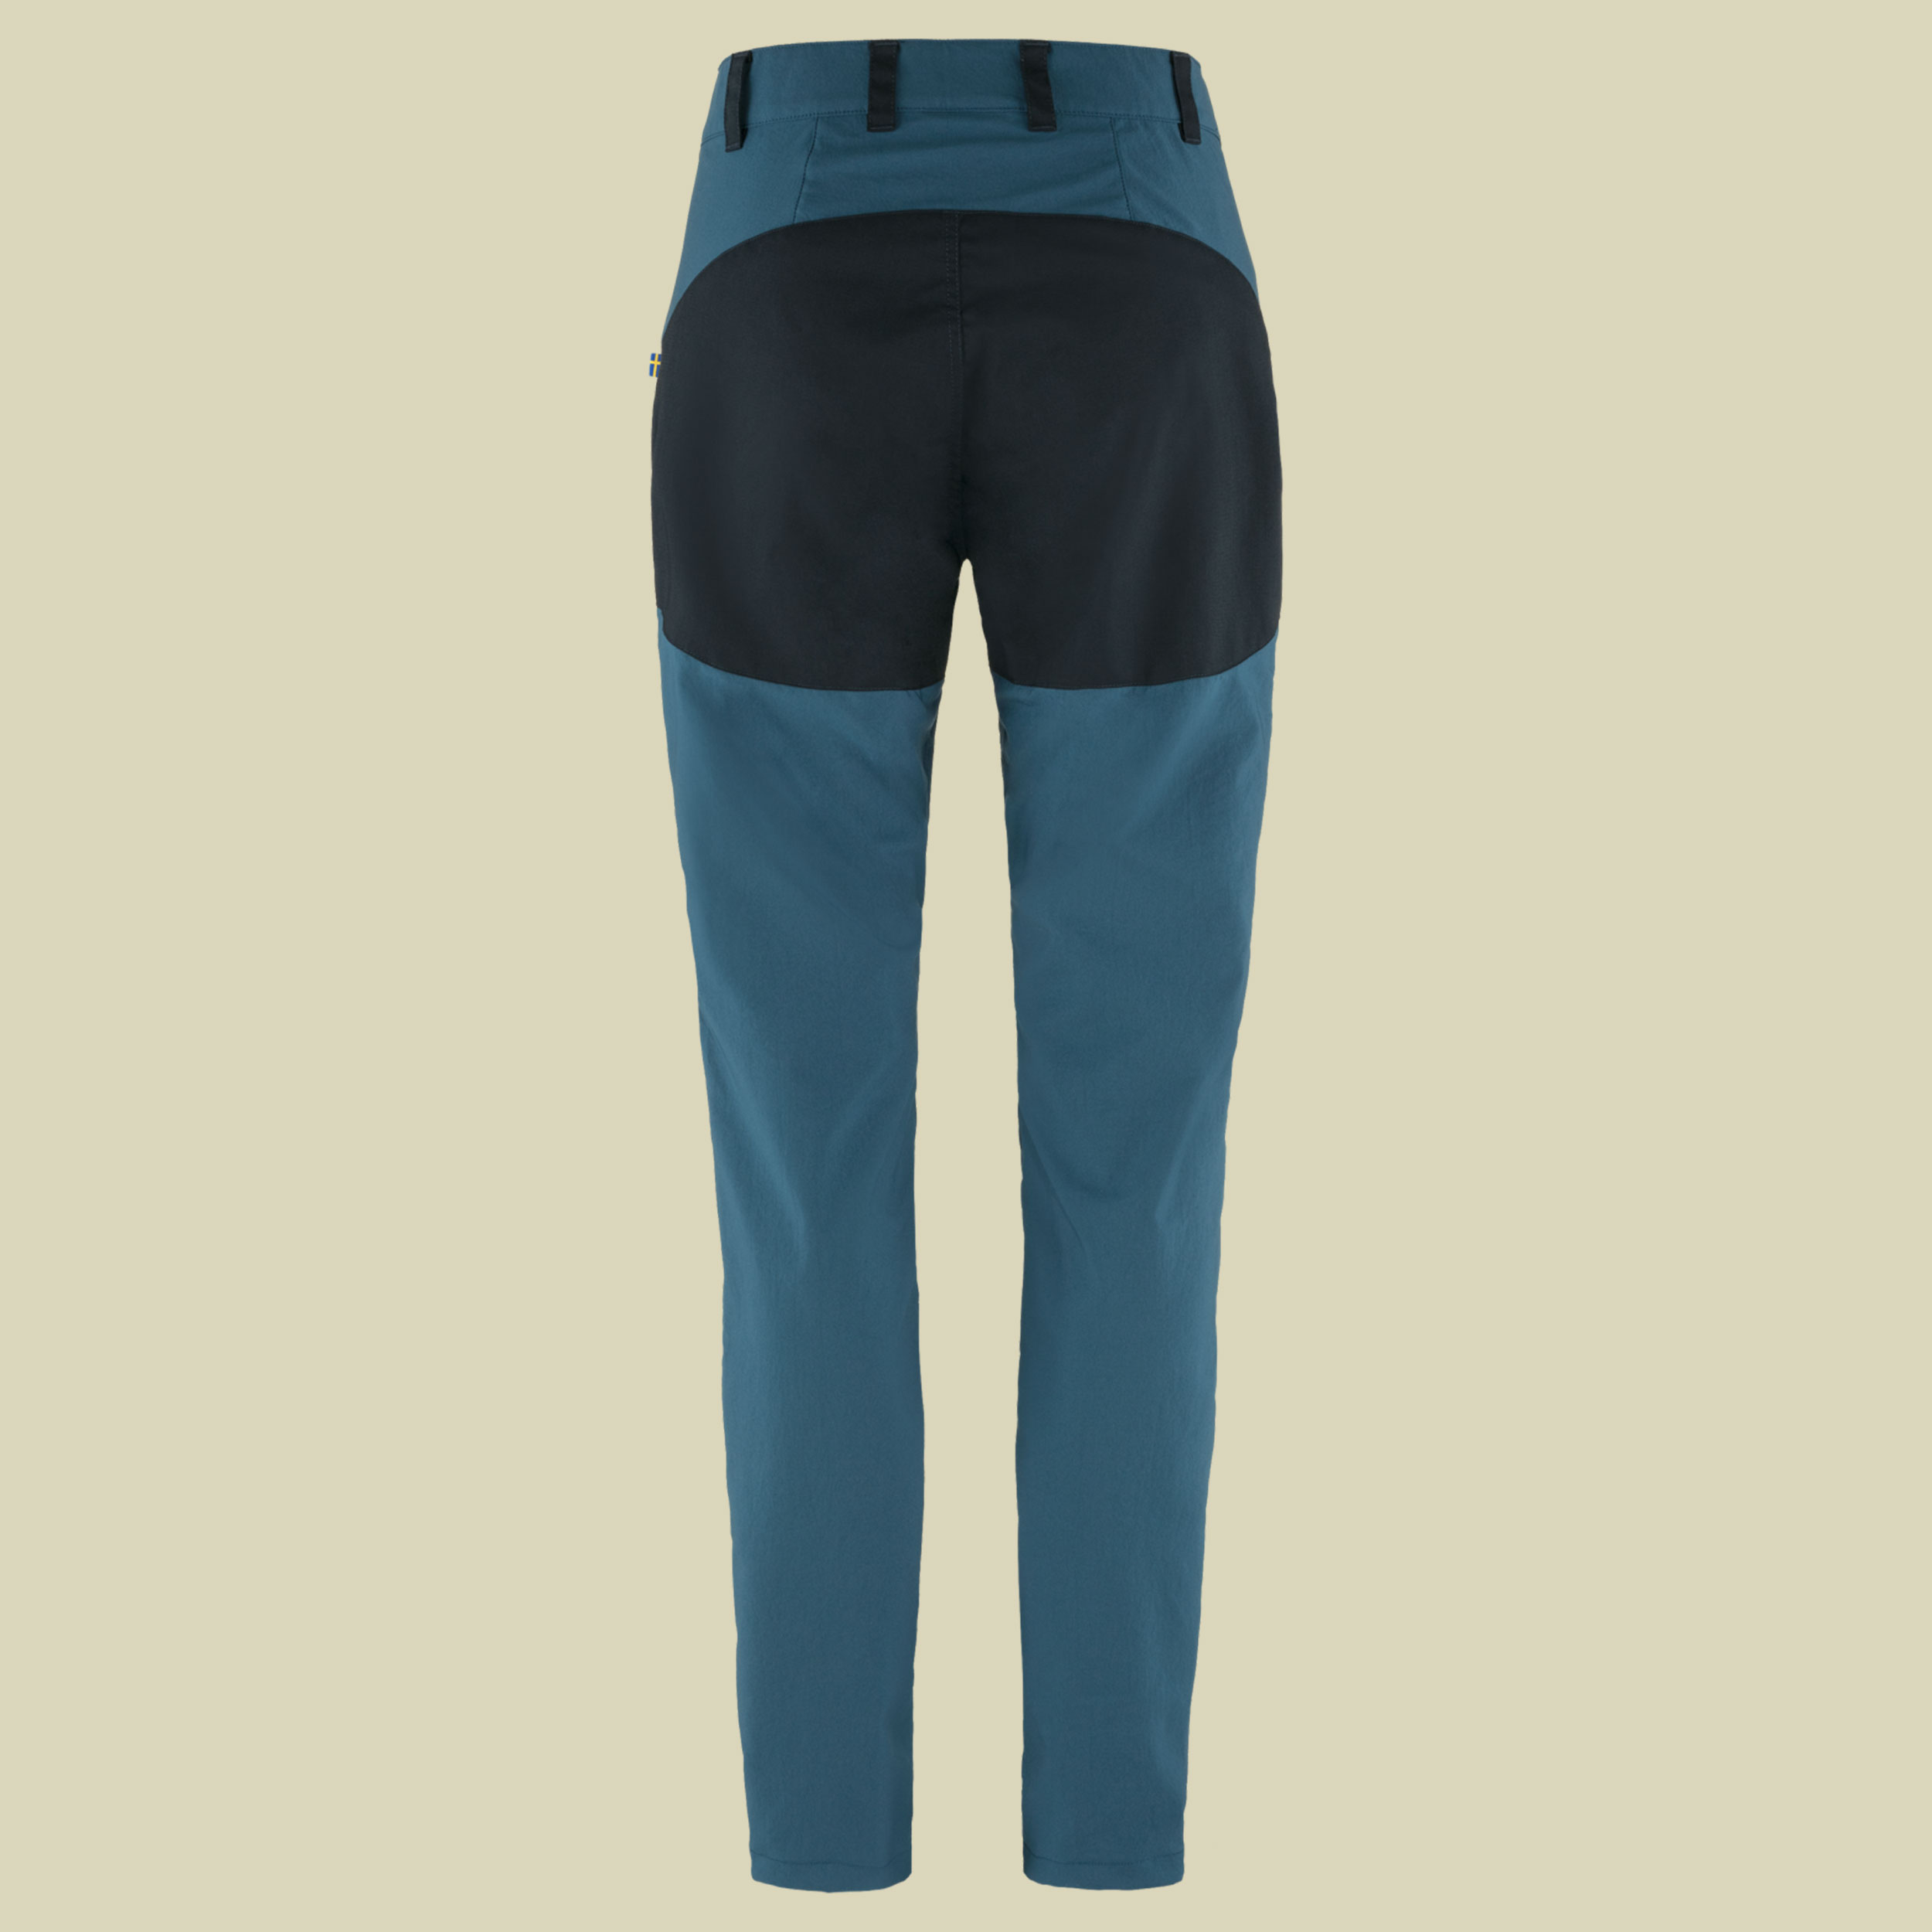 Abisko Midsummer Trousers Women Größe 42 Farbe indigo blue-dark navy